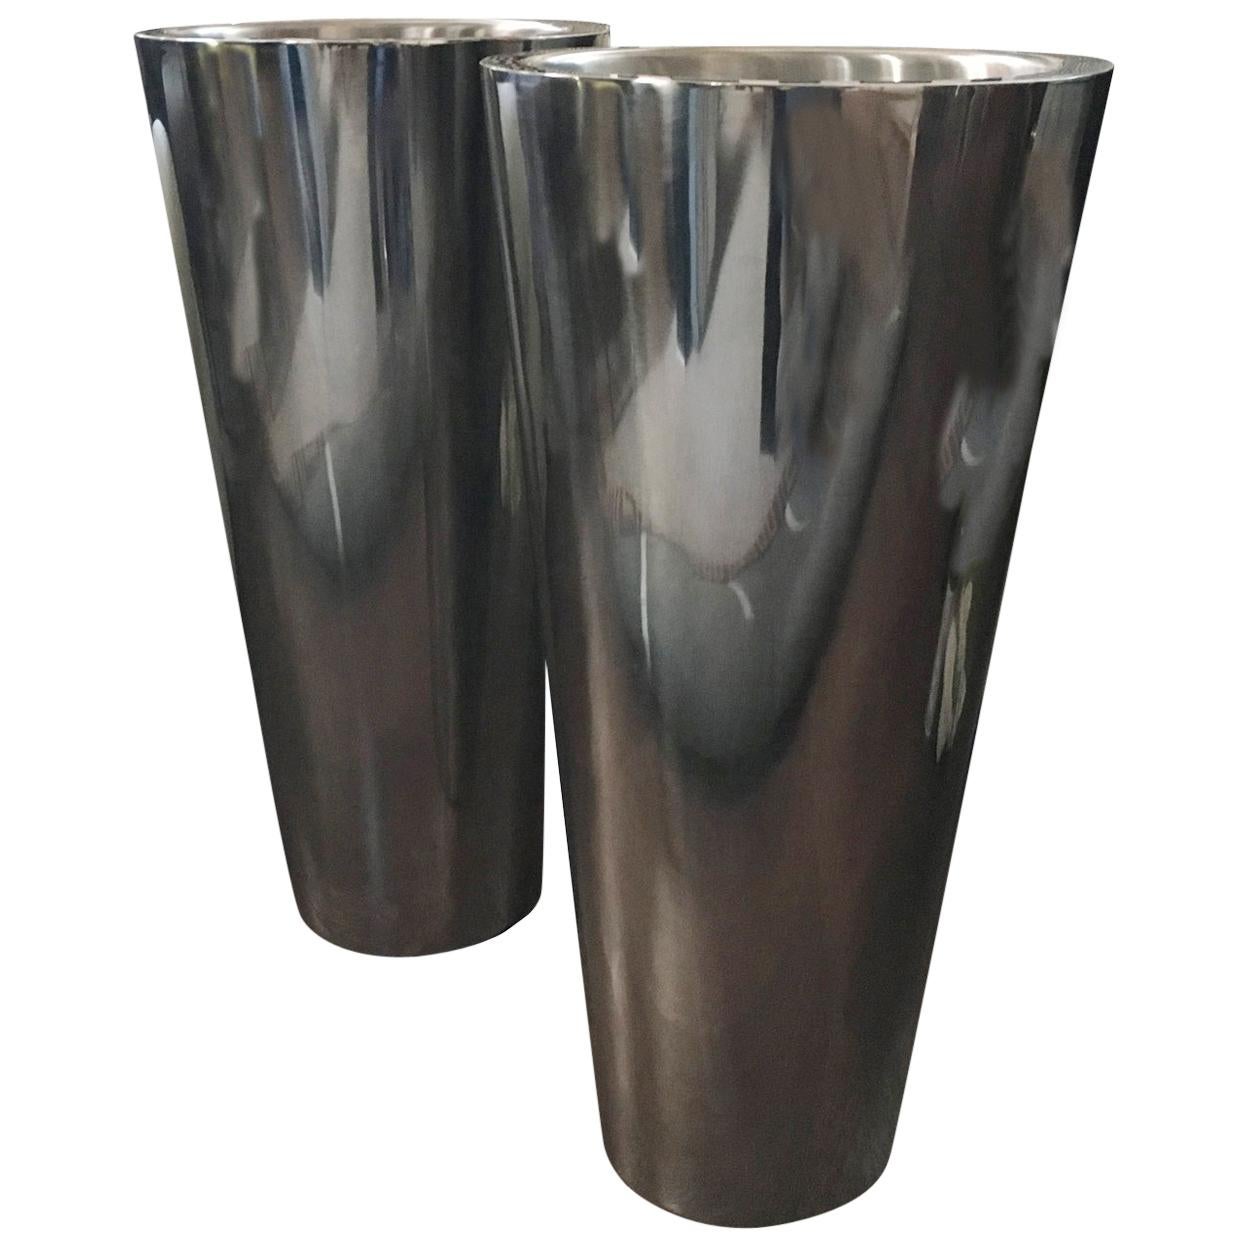 Paar Vasen im italienischen Design aus Metall mit Chrom-Verchromung